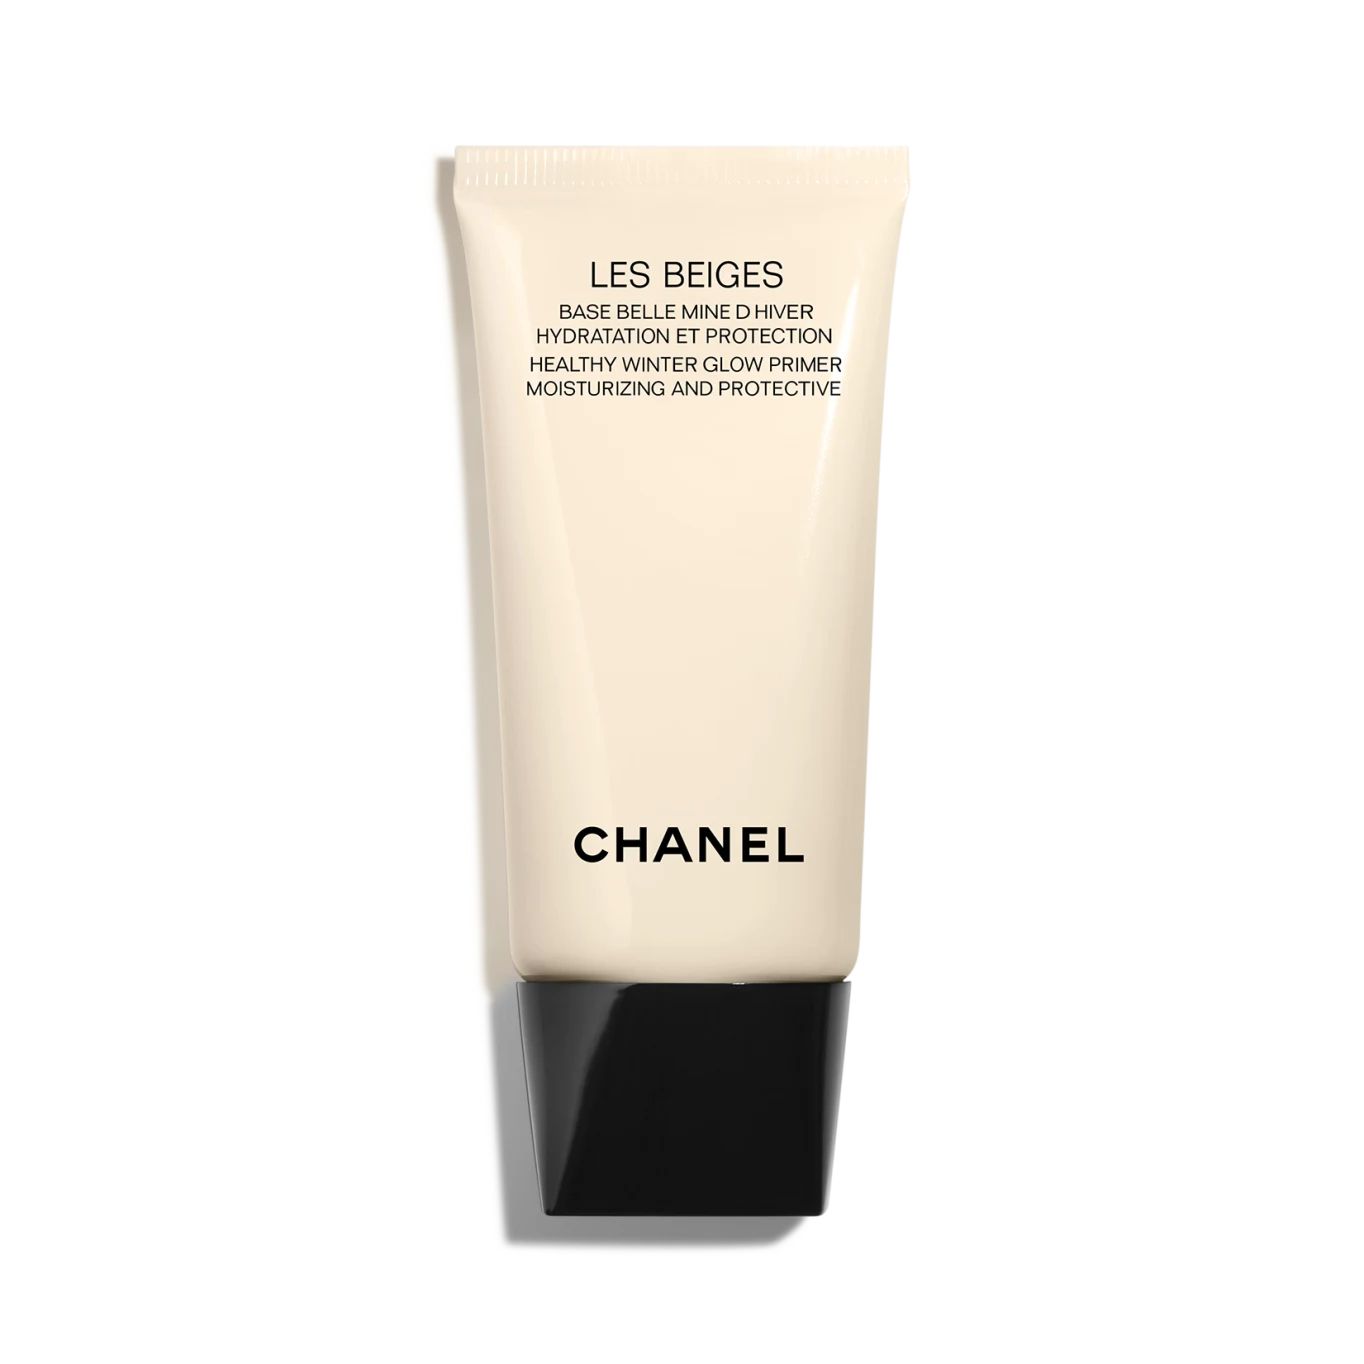 LES BEIGES | Chanel, Inc. (US)